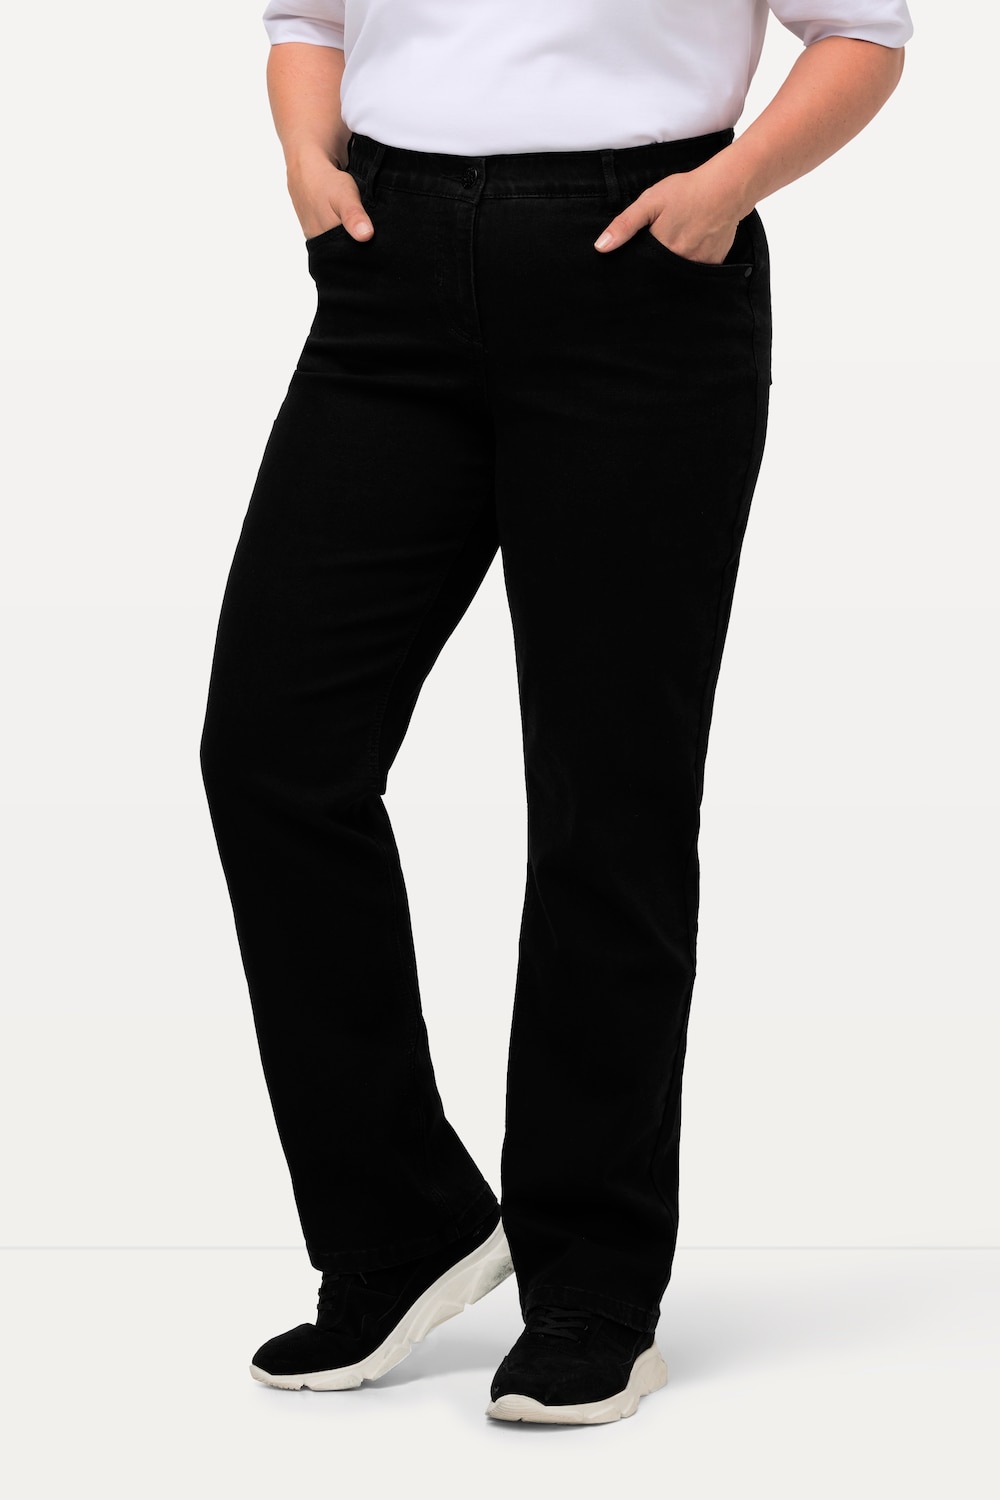 Grote Maten jeans Mandy, Dames, zwart, Maat: 52, Katoen/Polyester/Viscose, Ulla Popken